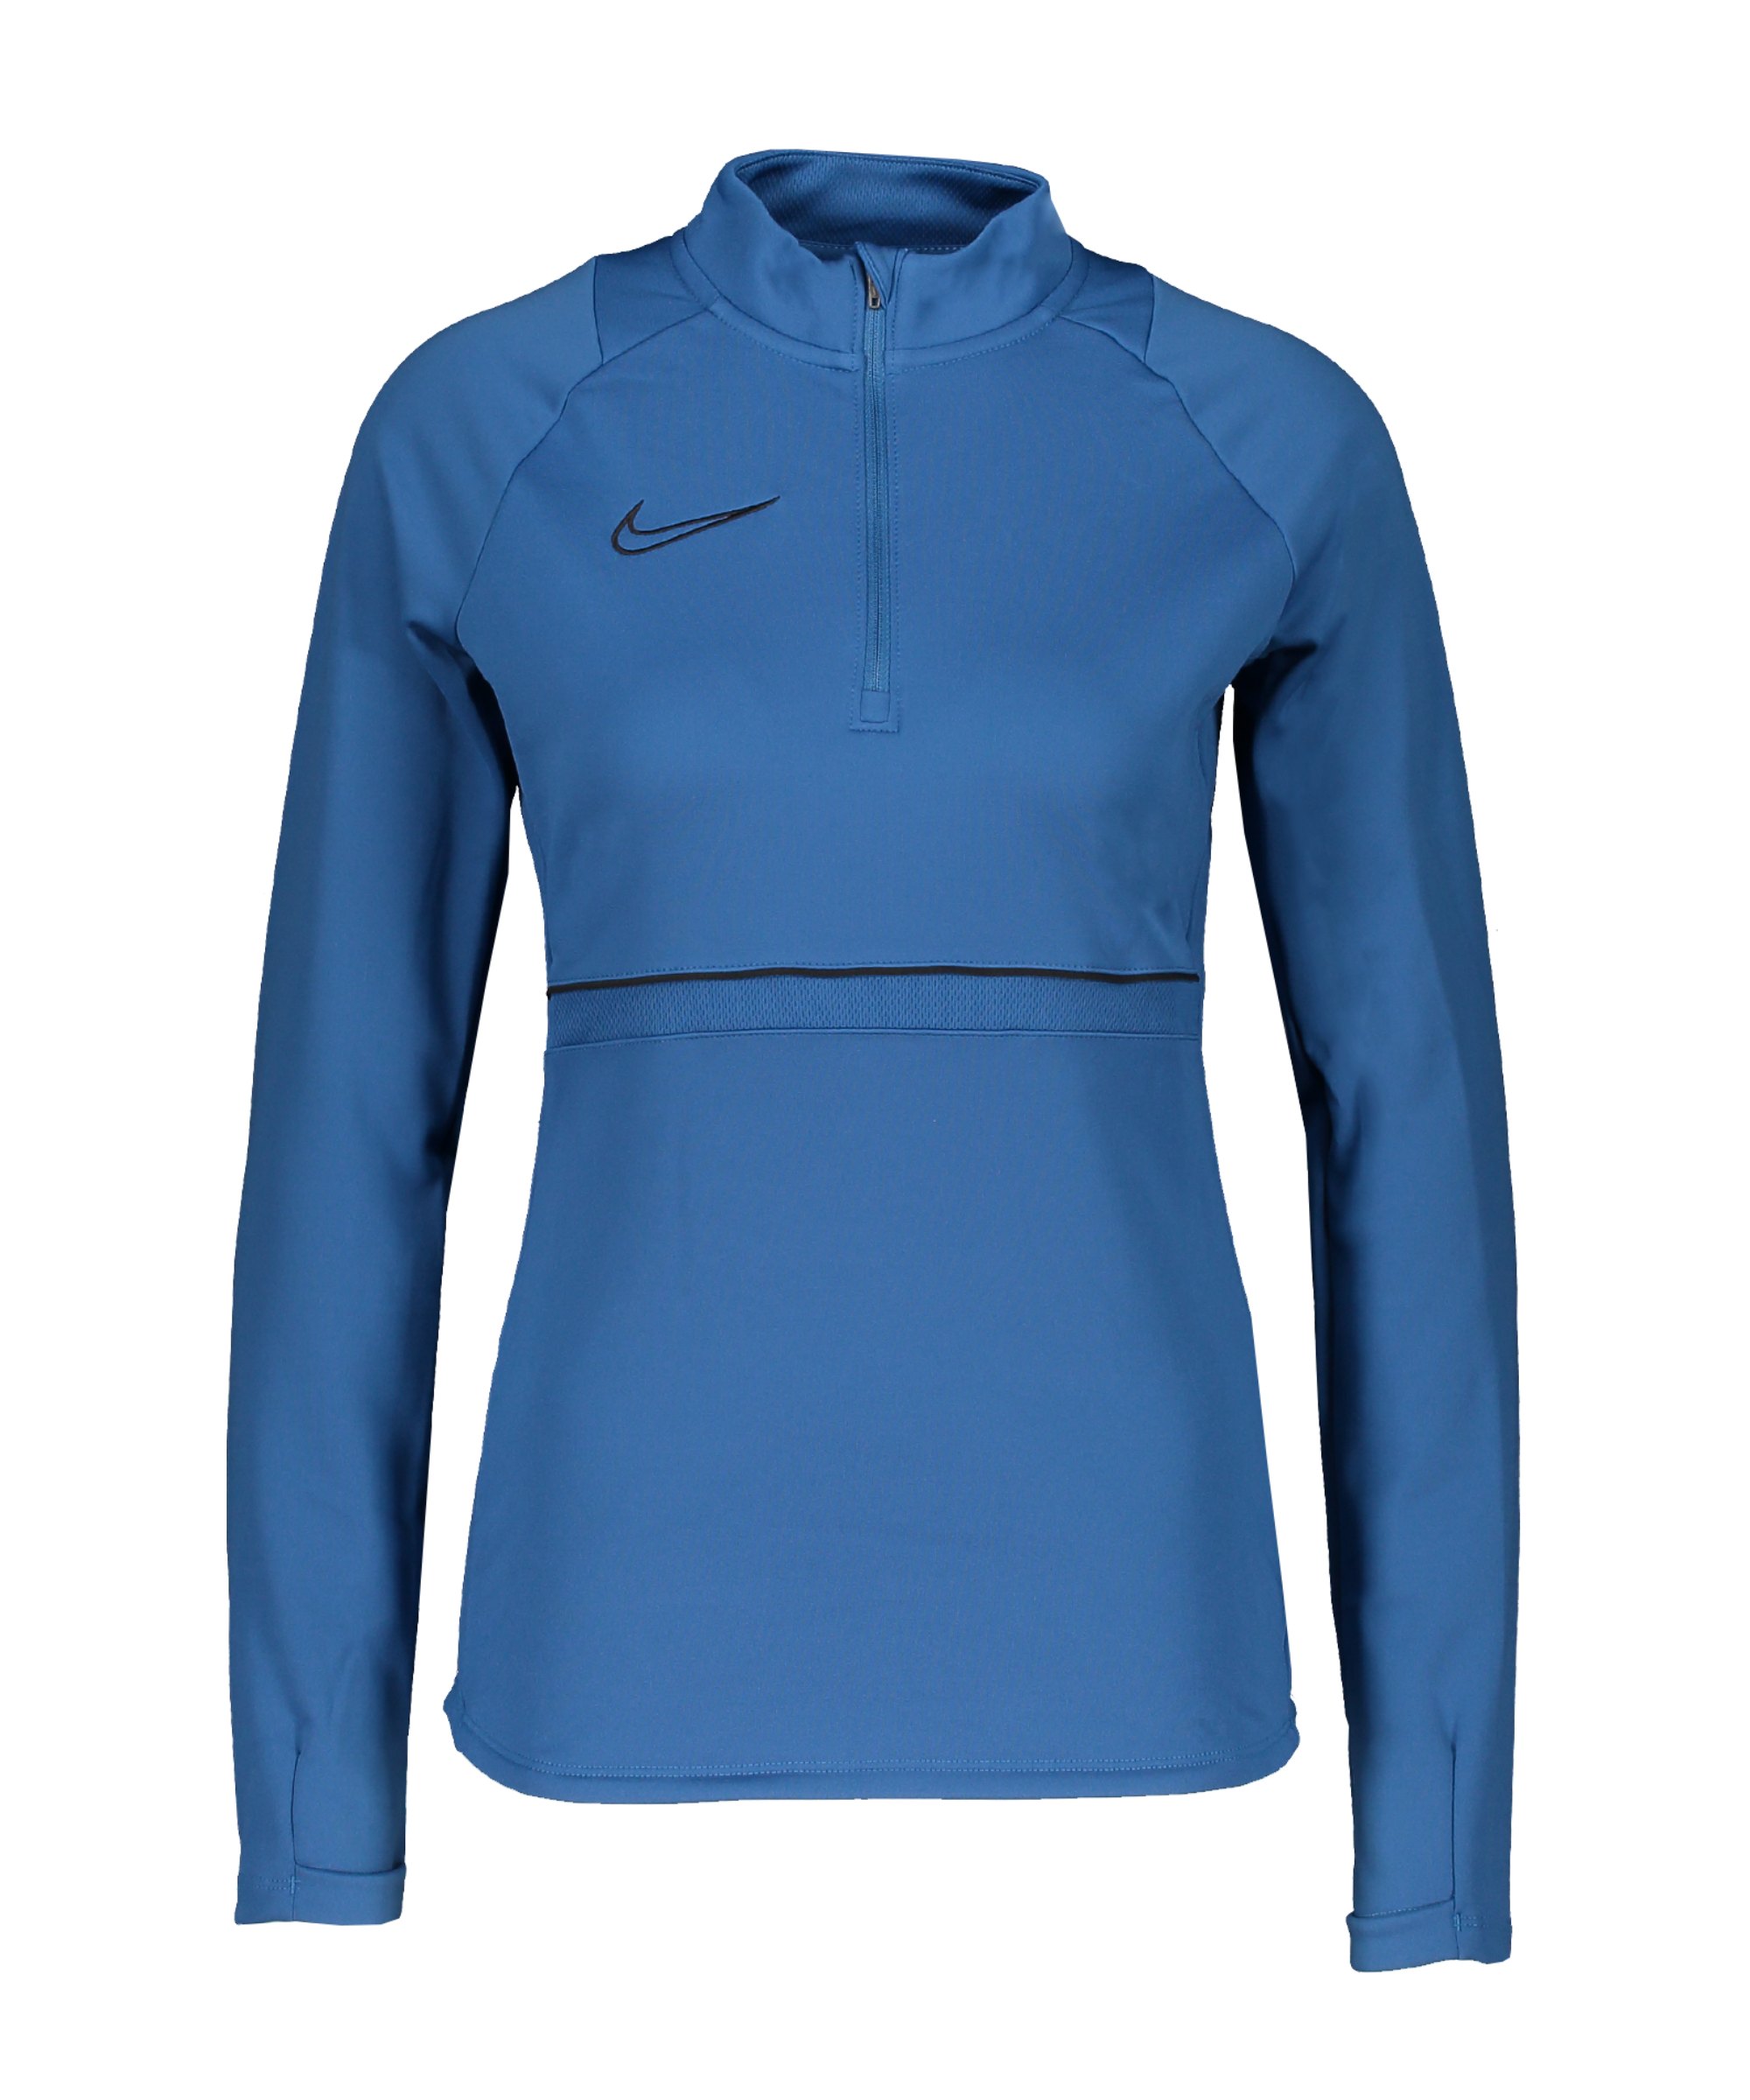 Nike Academy 21 Drill Top Damen Blau Schwarz F407 - blau